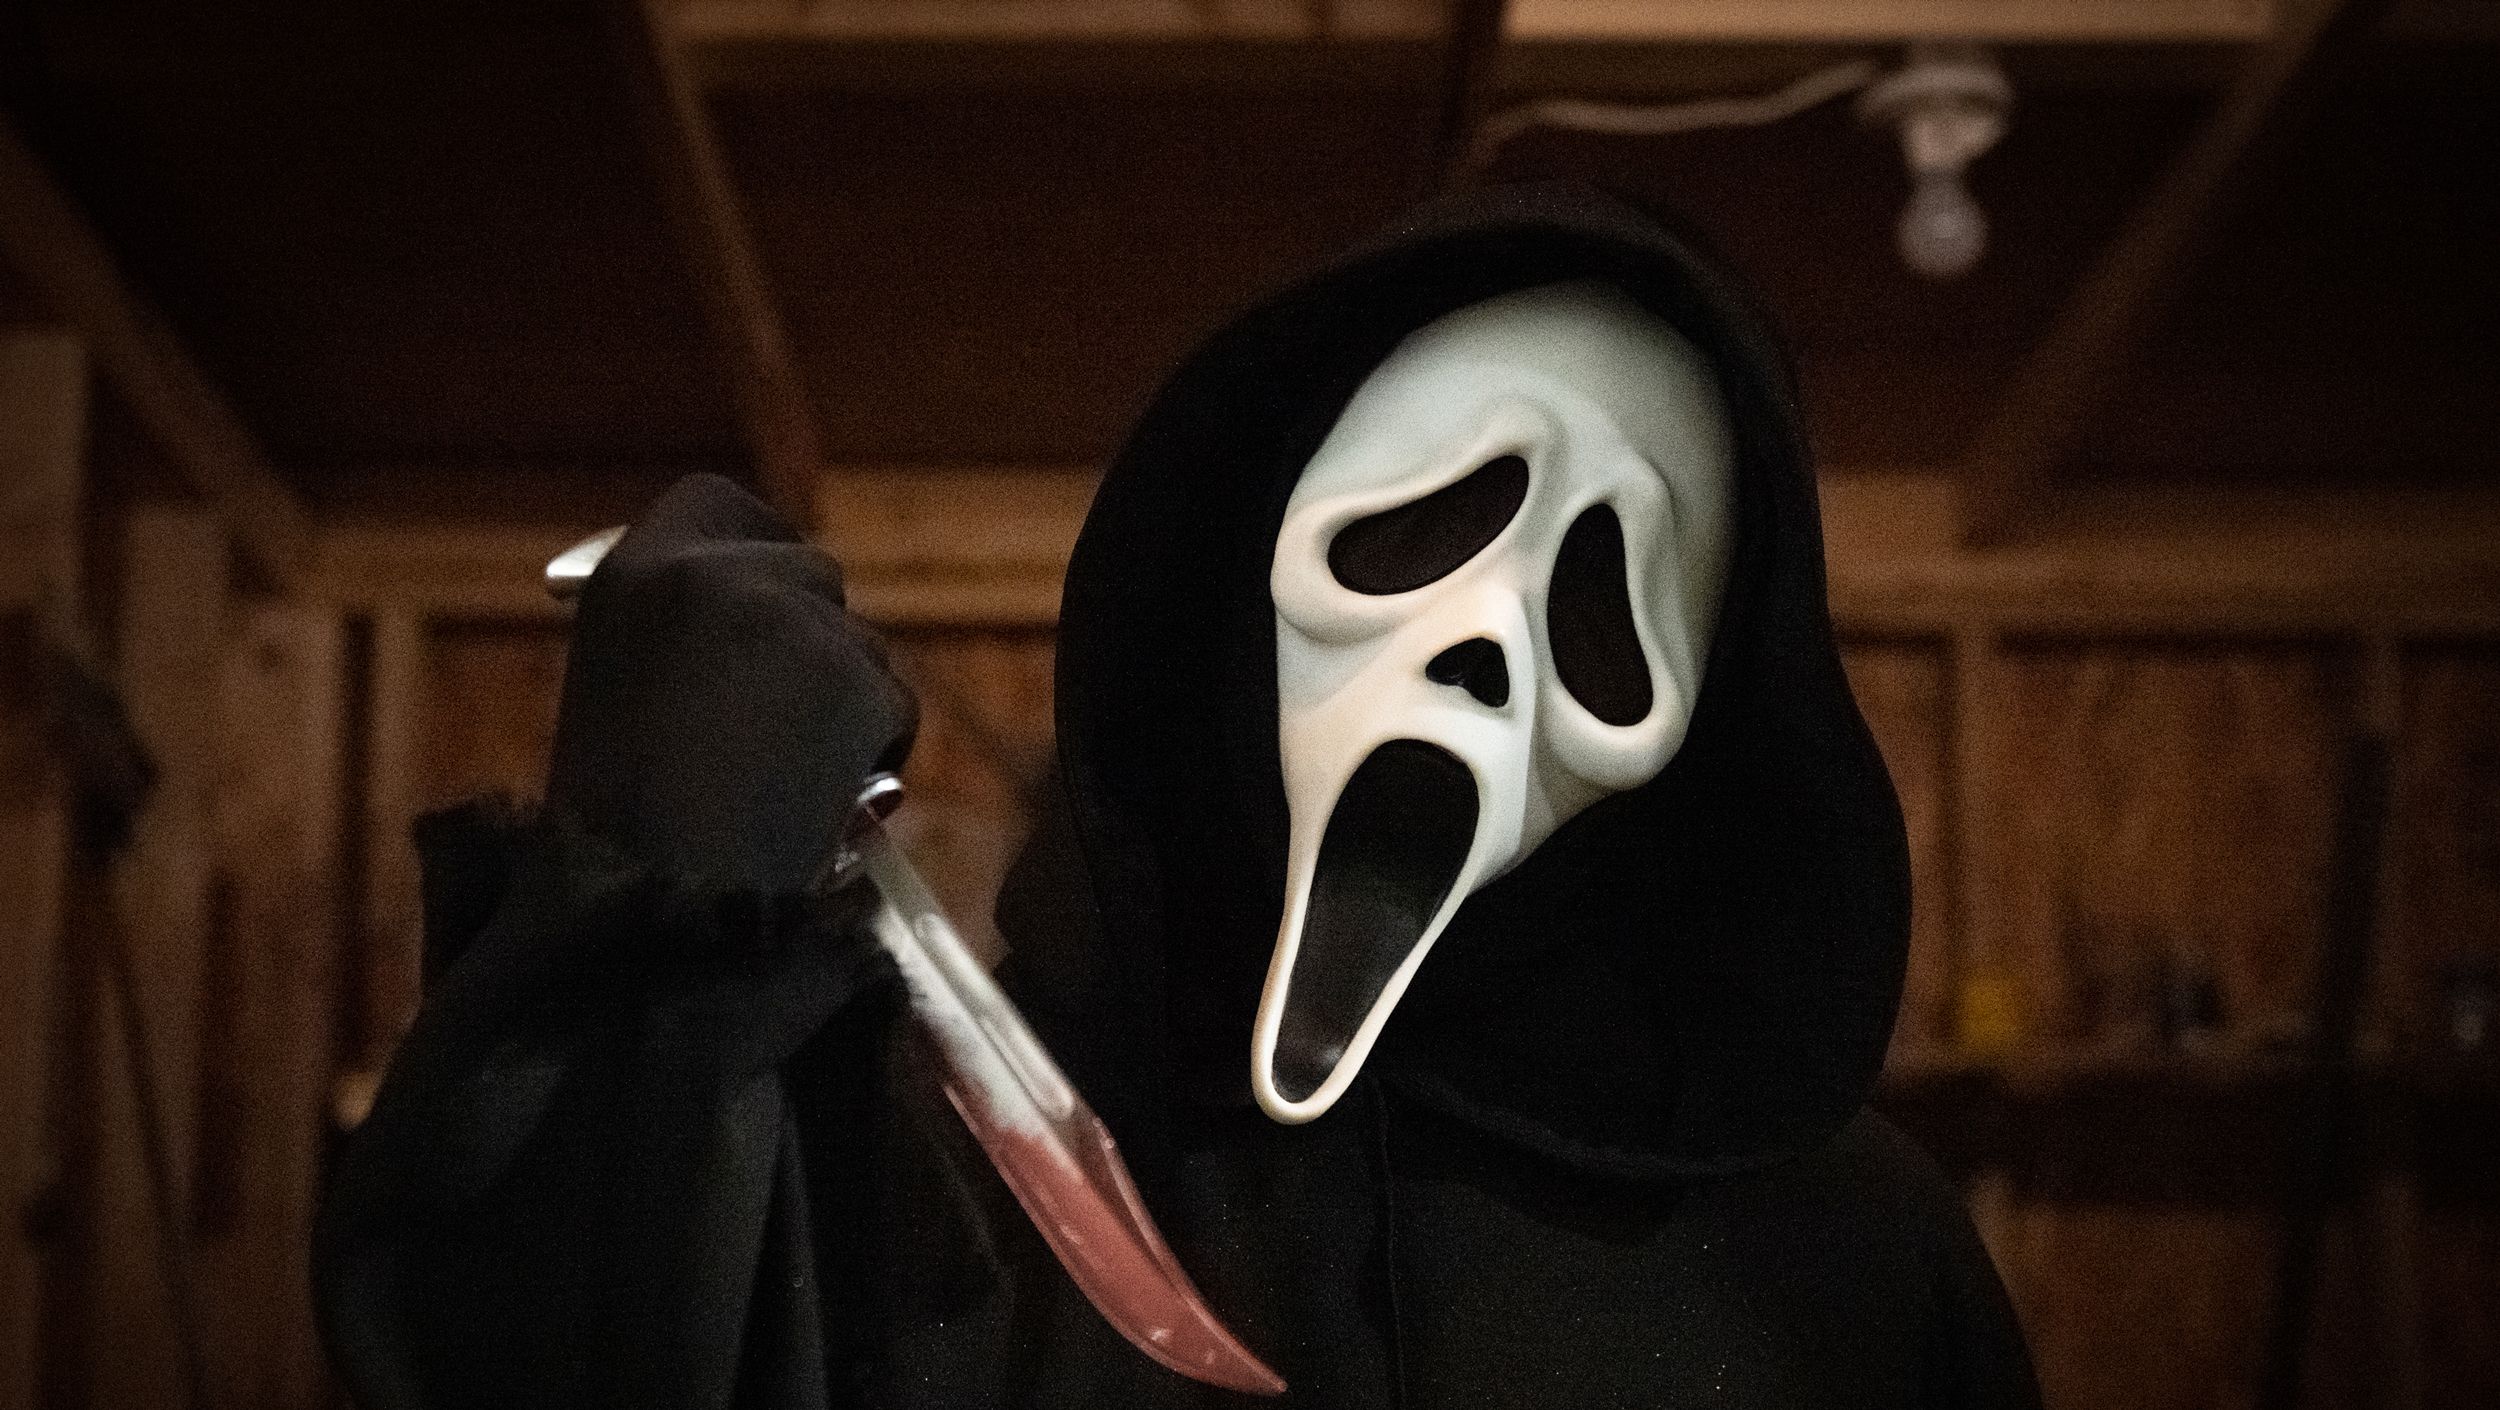 Scream 6': Liana Liberato Tells All About Going Down in 'Scream' History